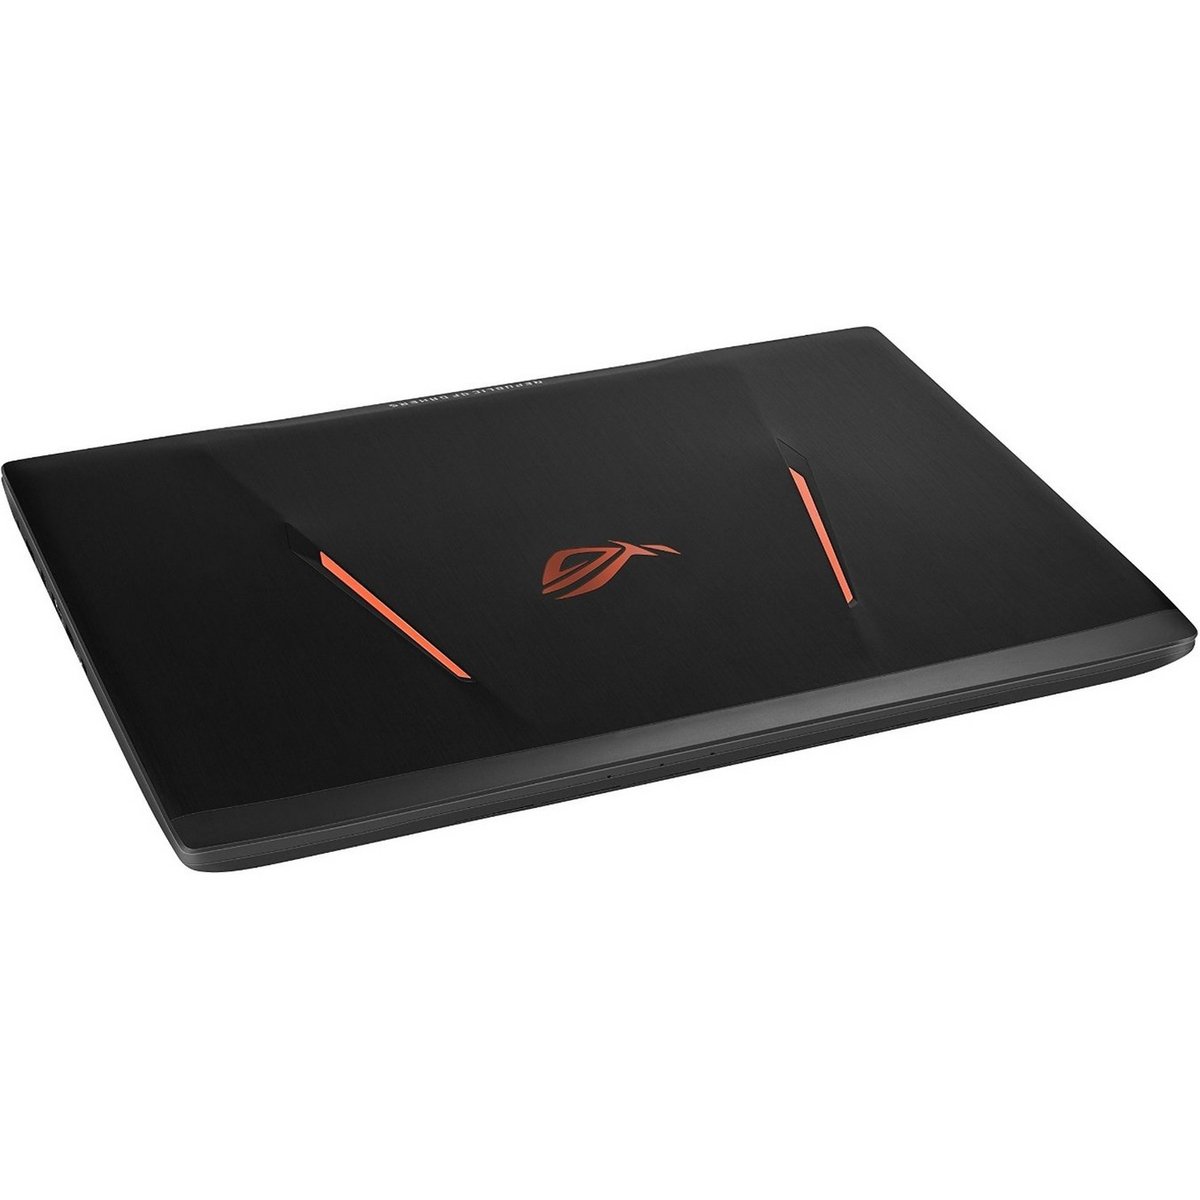 Asus Gaming Notebook ROG STRIX GL553VW-FY036T Black